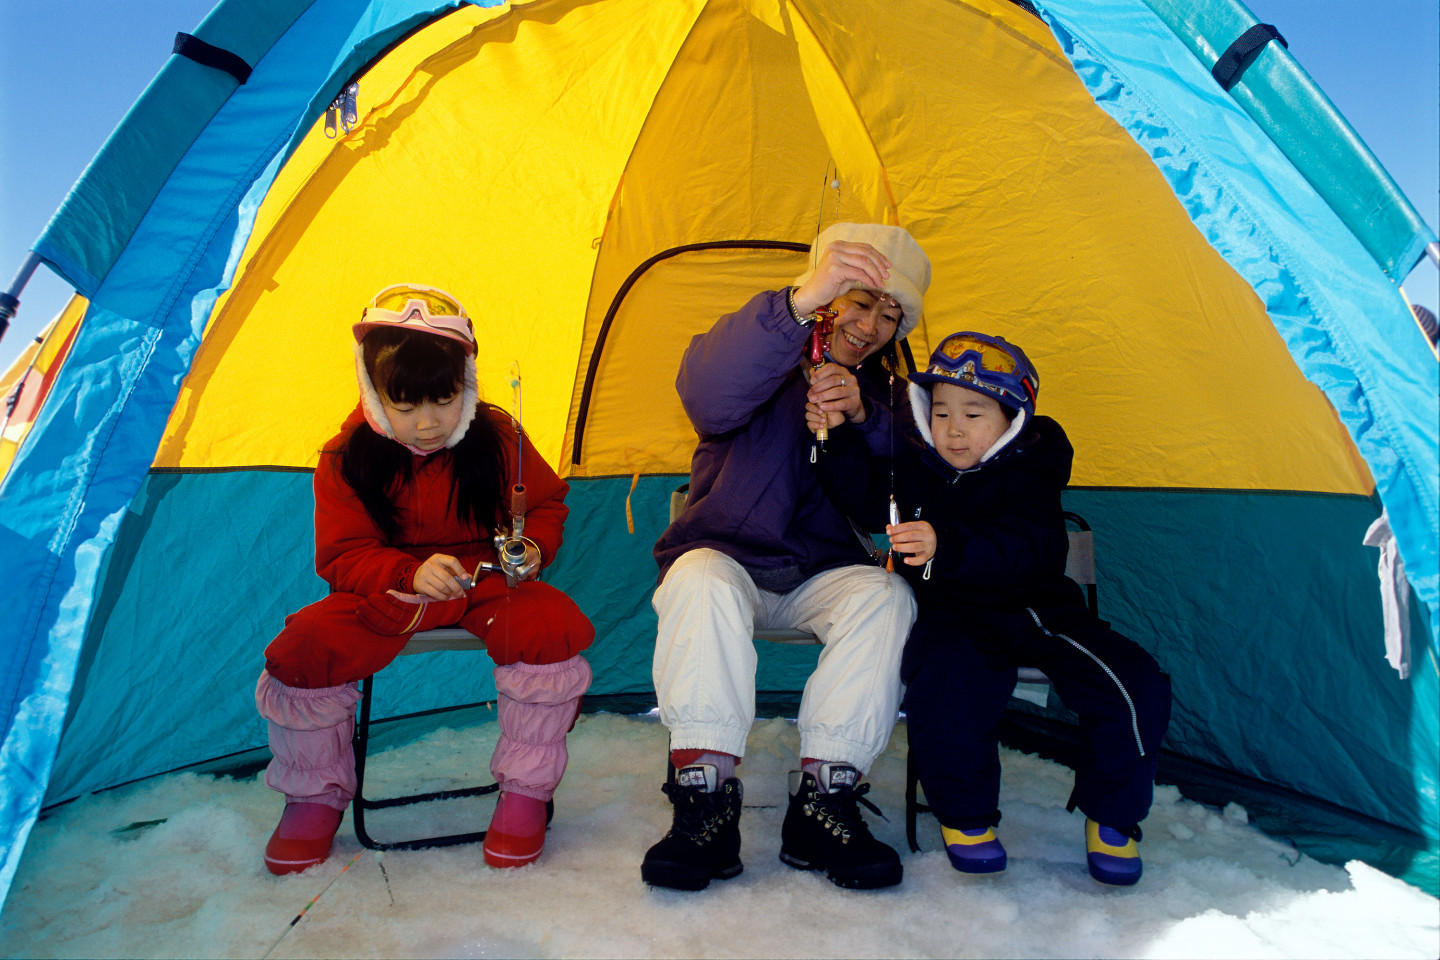 冬季釧路、阿寒的休閒娛樂&運動!<br>您知道嗎?這塊大地變成了冰雪遊樂園喔!